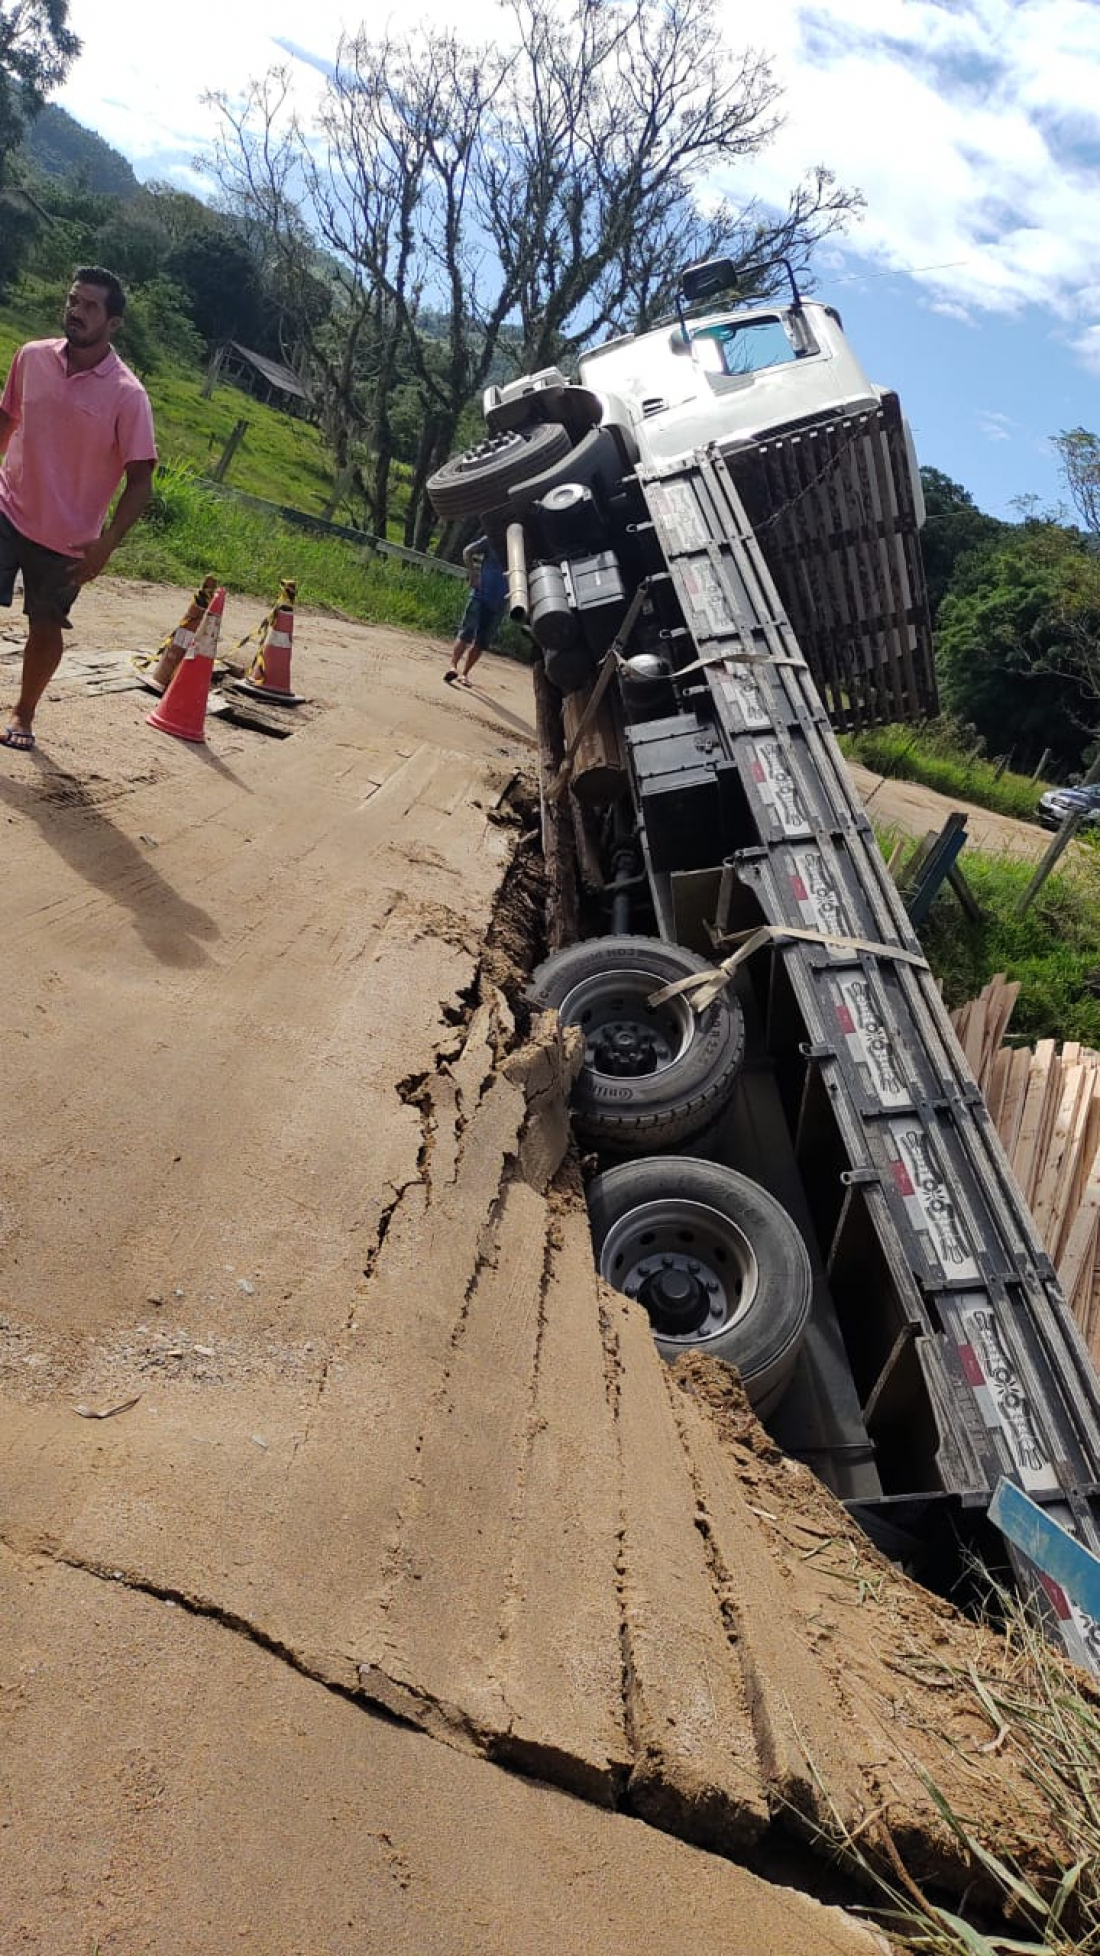 PRF flagra caminhão com suspensão irregular no Paraná - Blog do Caminhoneiro